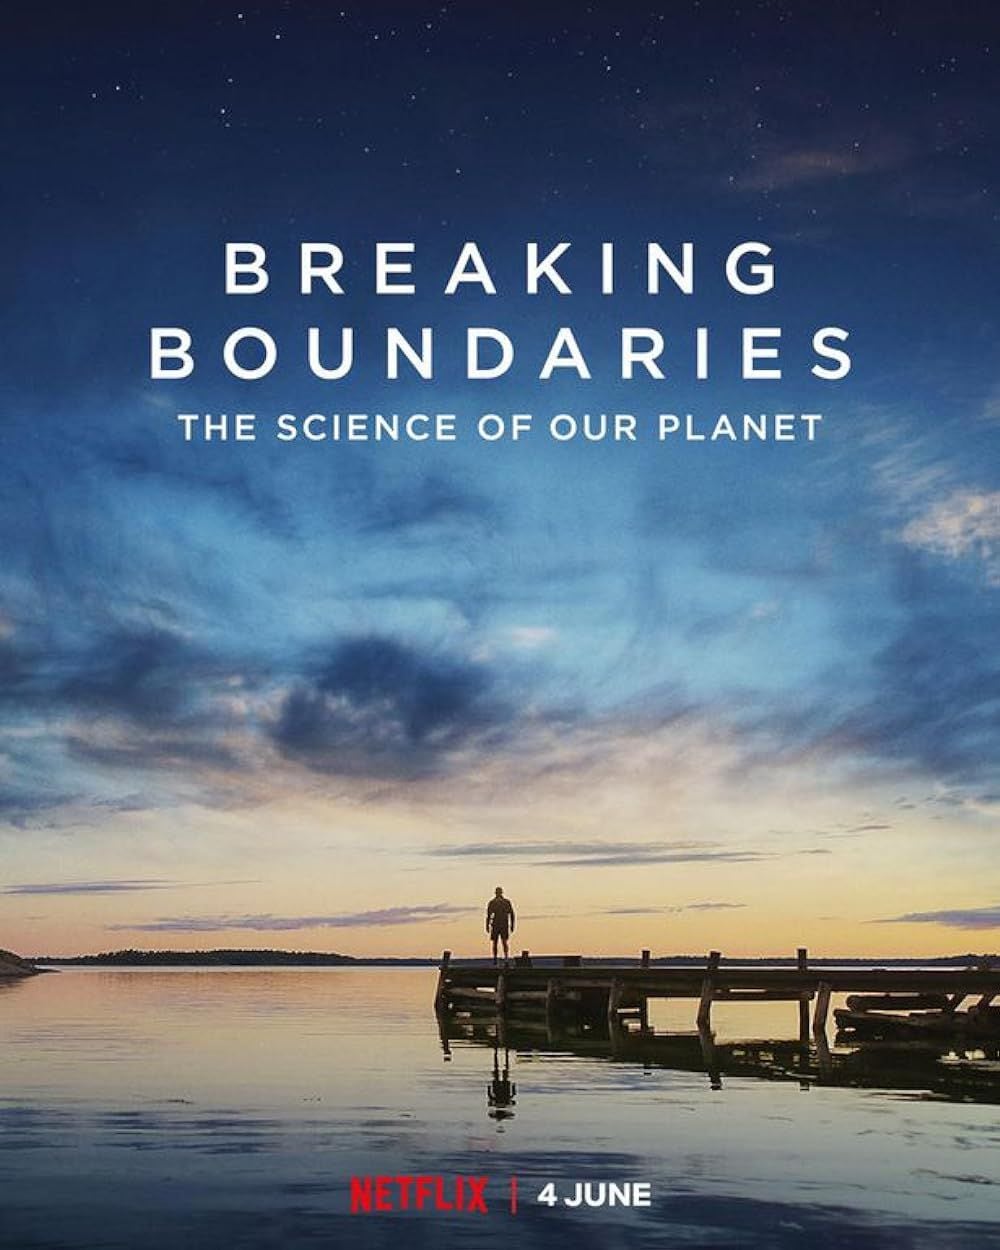 David Attenborough, protagonista de 'Romper los límites: La ciencia de nuestro planeta', tiene una carrera de décadas como científico especializado en la crisis ambiental. Foto: IMDb